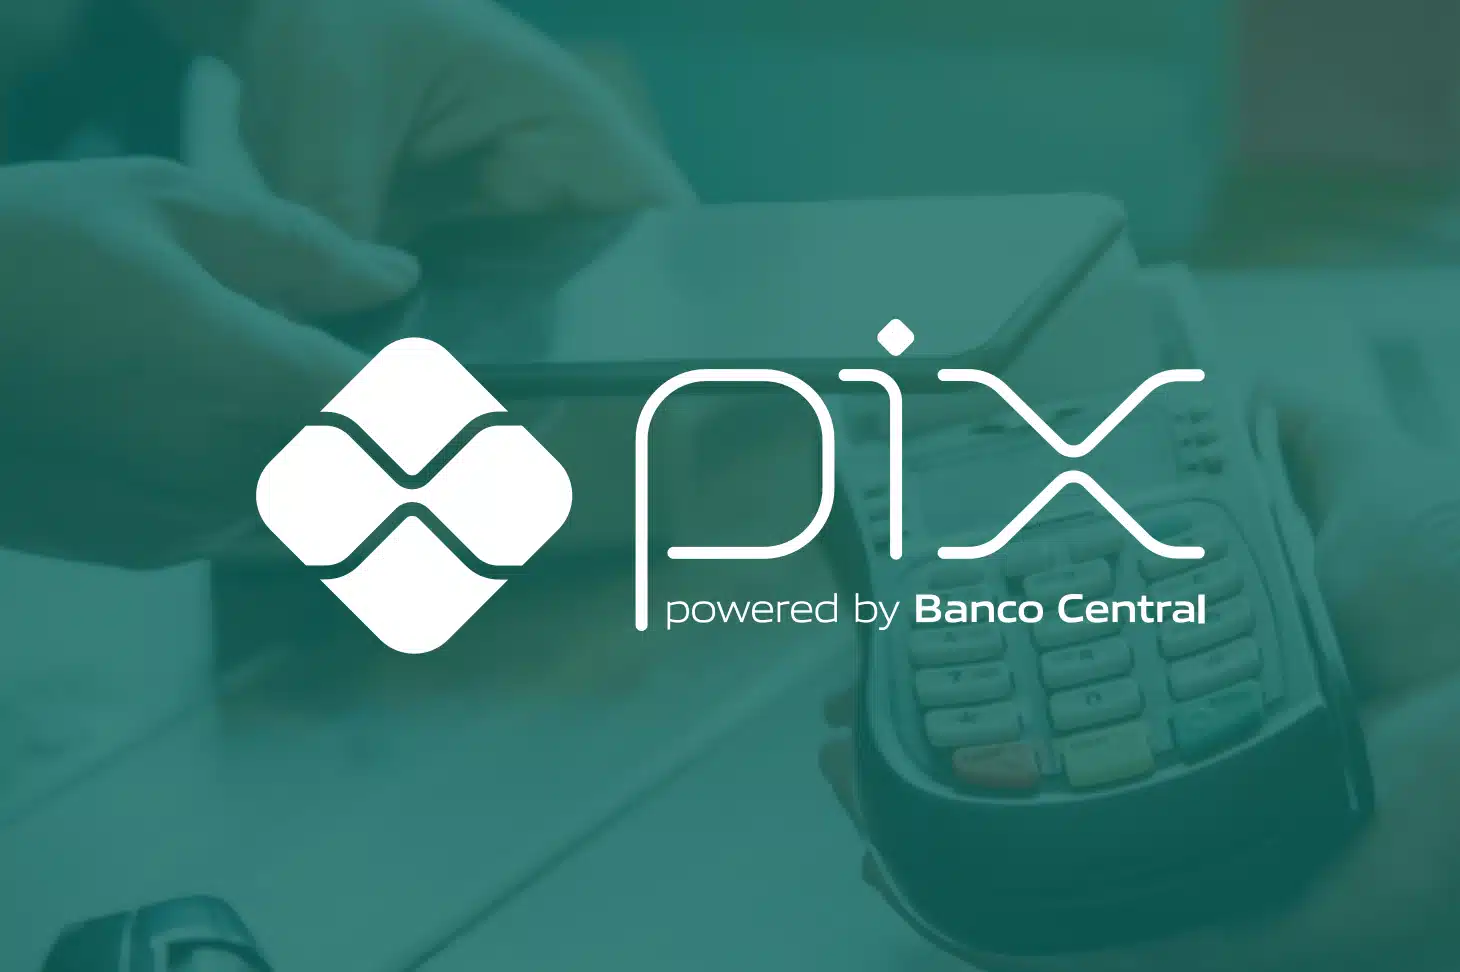 Sabia que o Pix ja e o segundo maior meio de pagamentos instantaneos do mundo